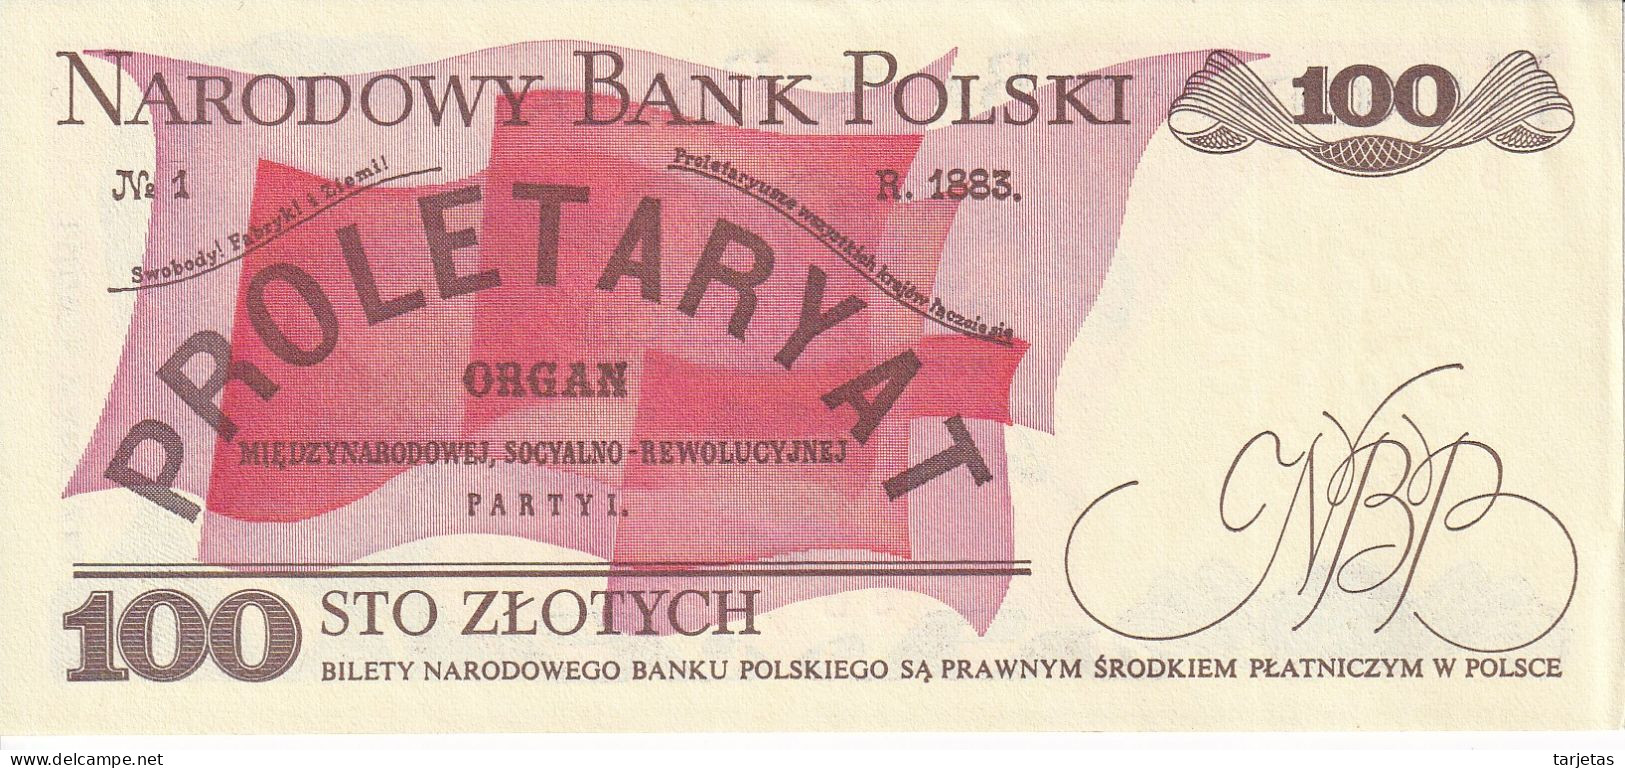 BILLETE DE POLONIA DE 100 ZLOTYCH DEL AÑO 1986 SIN CIRCULAR (UNC) (BANKNOTE) - Pologne